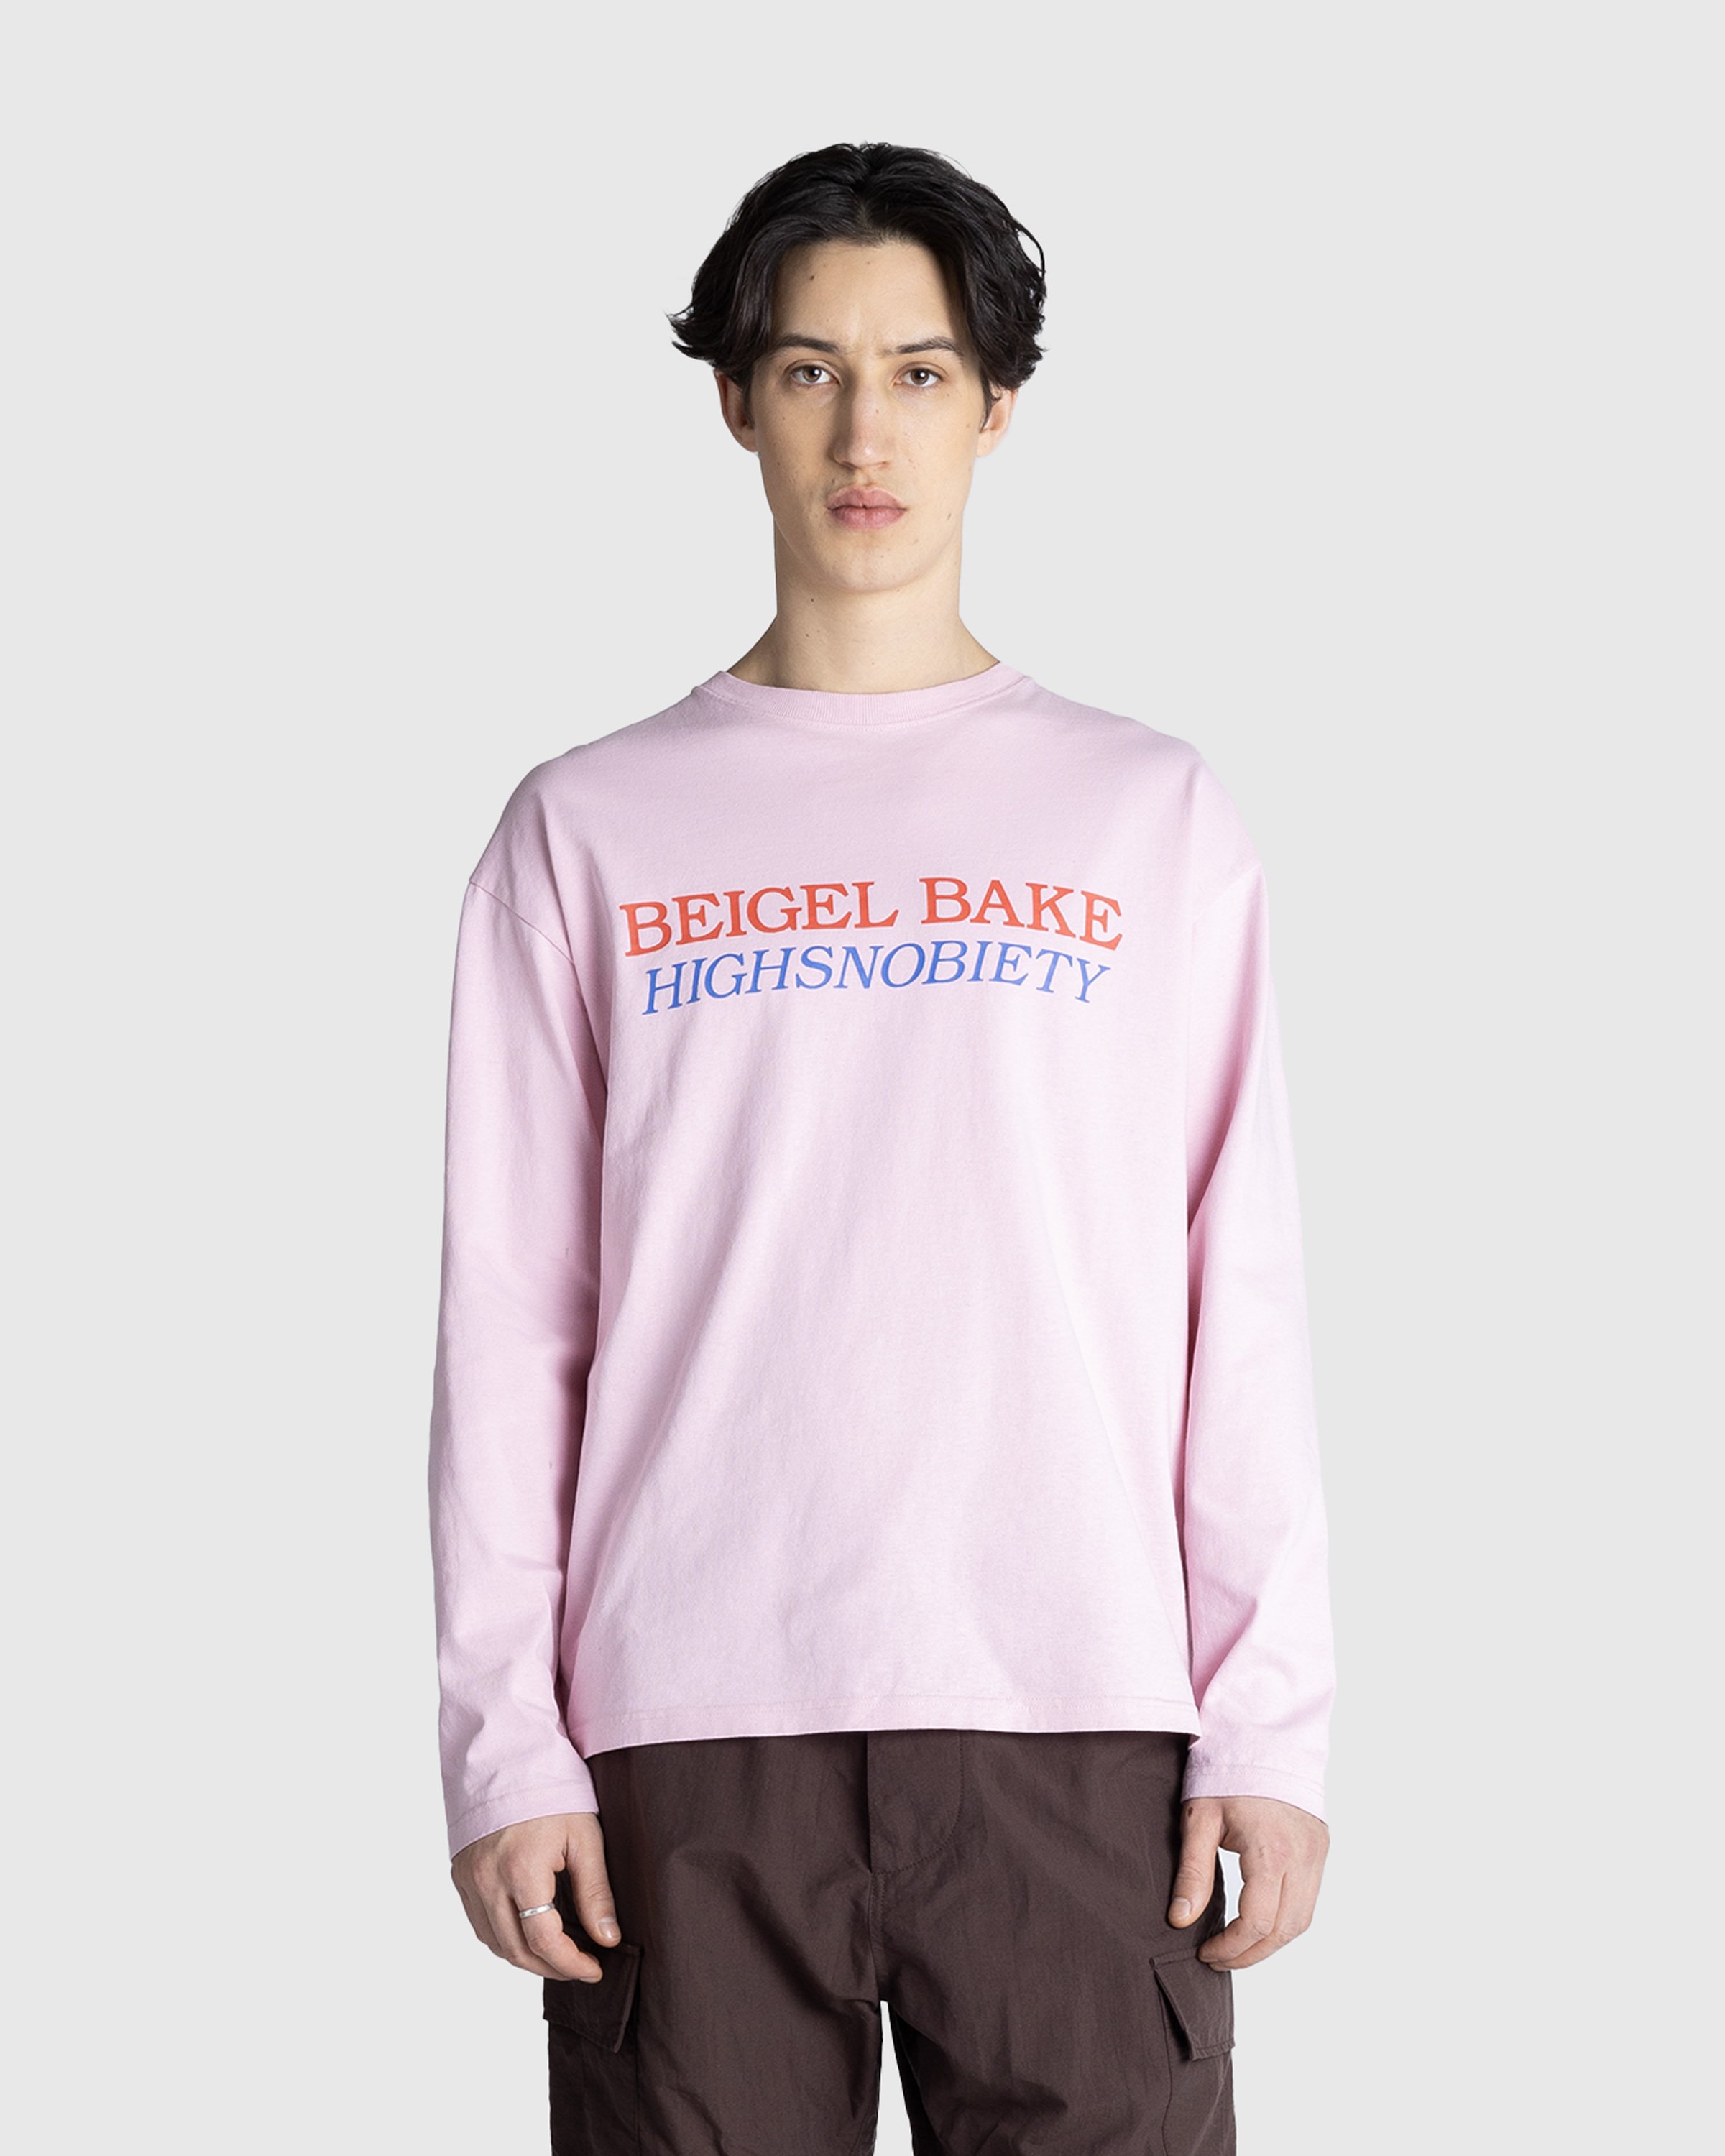 Beigel Bake x Highsnobiety - Pink Long Sleeves Tee - Clothing -  - Image 3